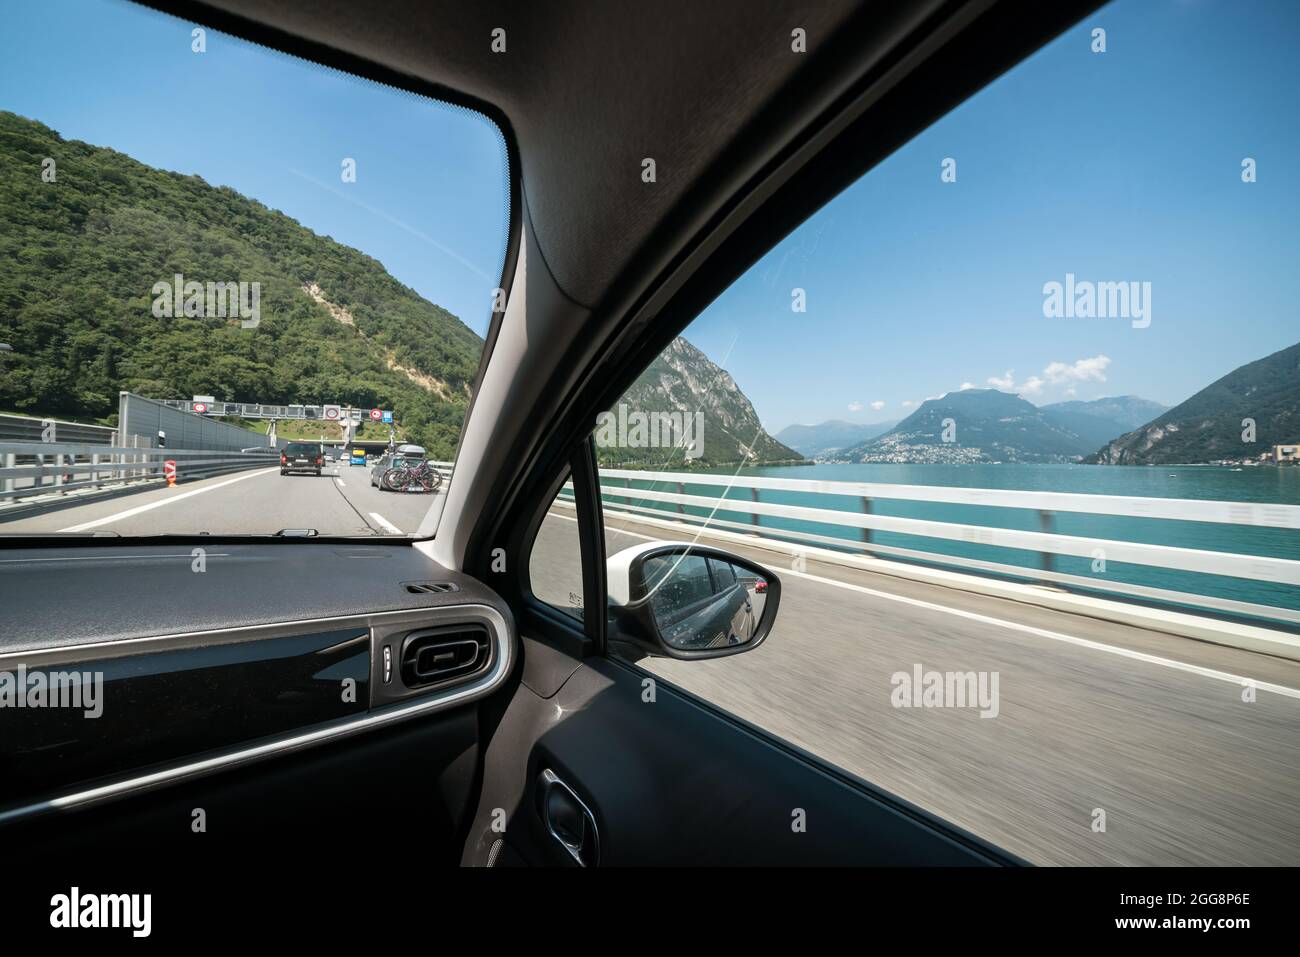 Specchietto auto immagini e fotografie stock ad alta risoluzione - Alamy